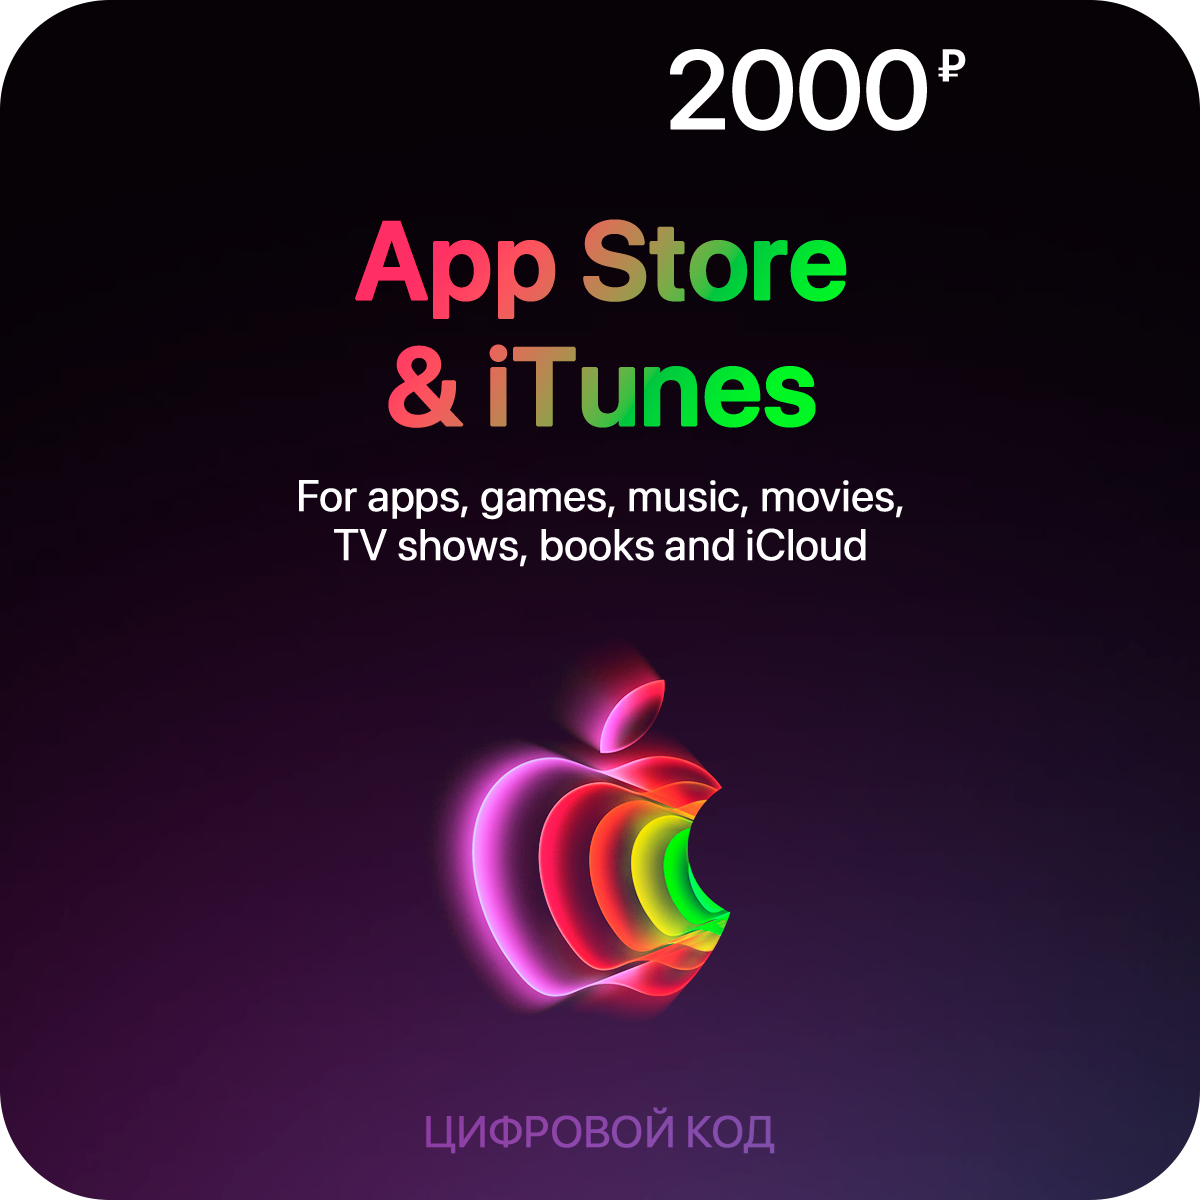 Пополнение счета App Store & iTunes (2000 рублей)